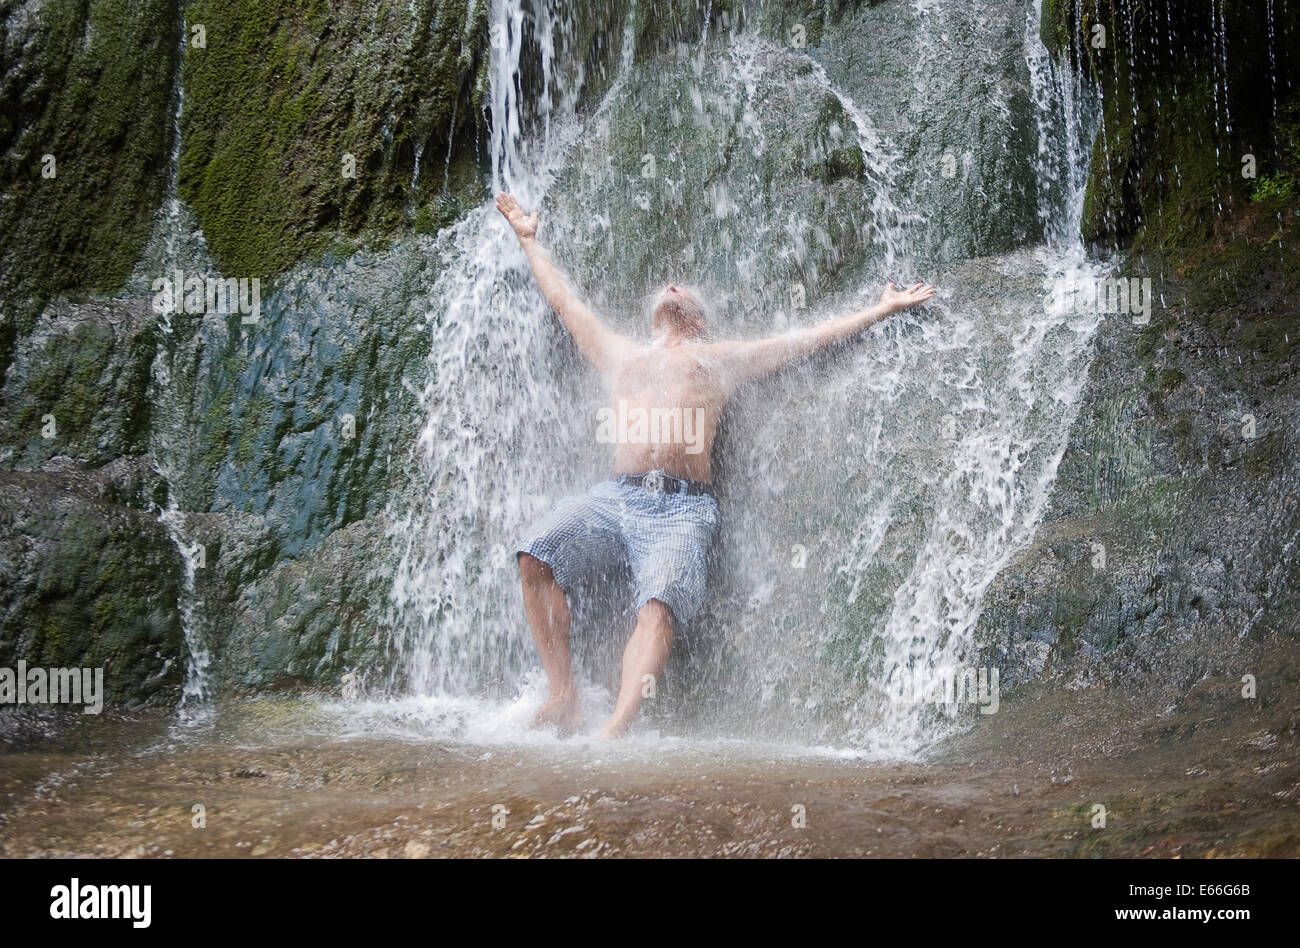 Ein Mann hat eine Dusche unter einem natürlichen Wasserfall Stockfotografie  - Alamy